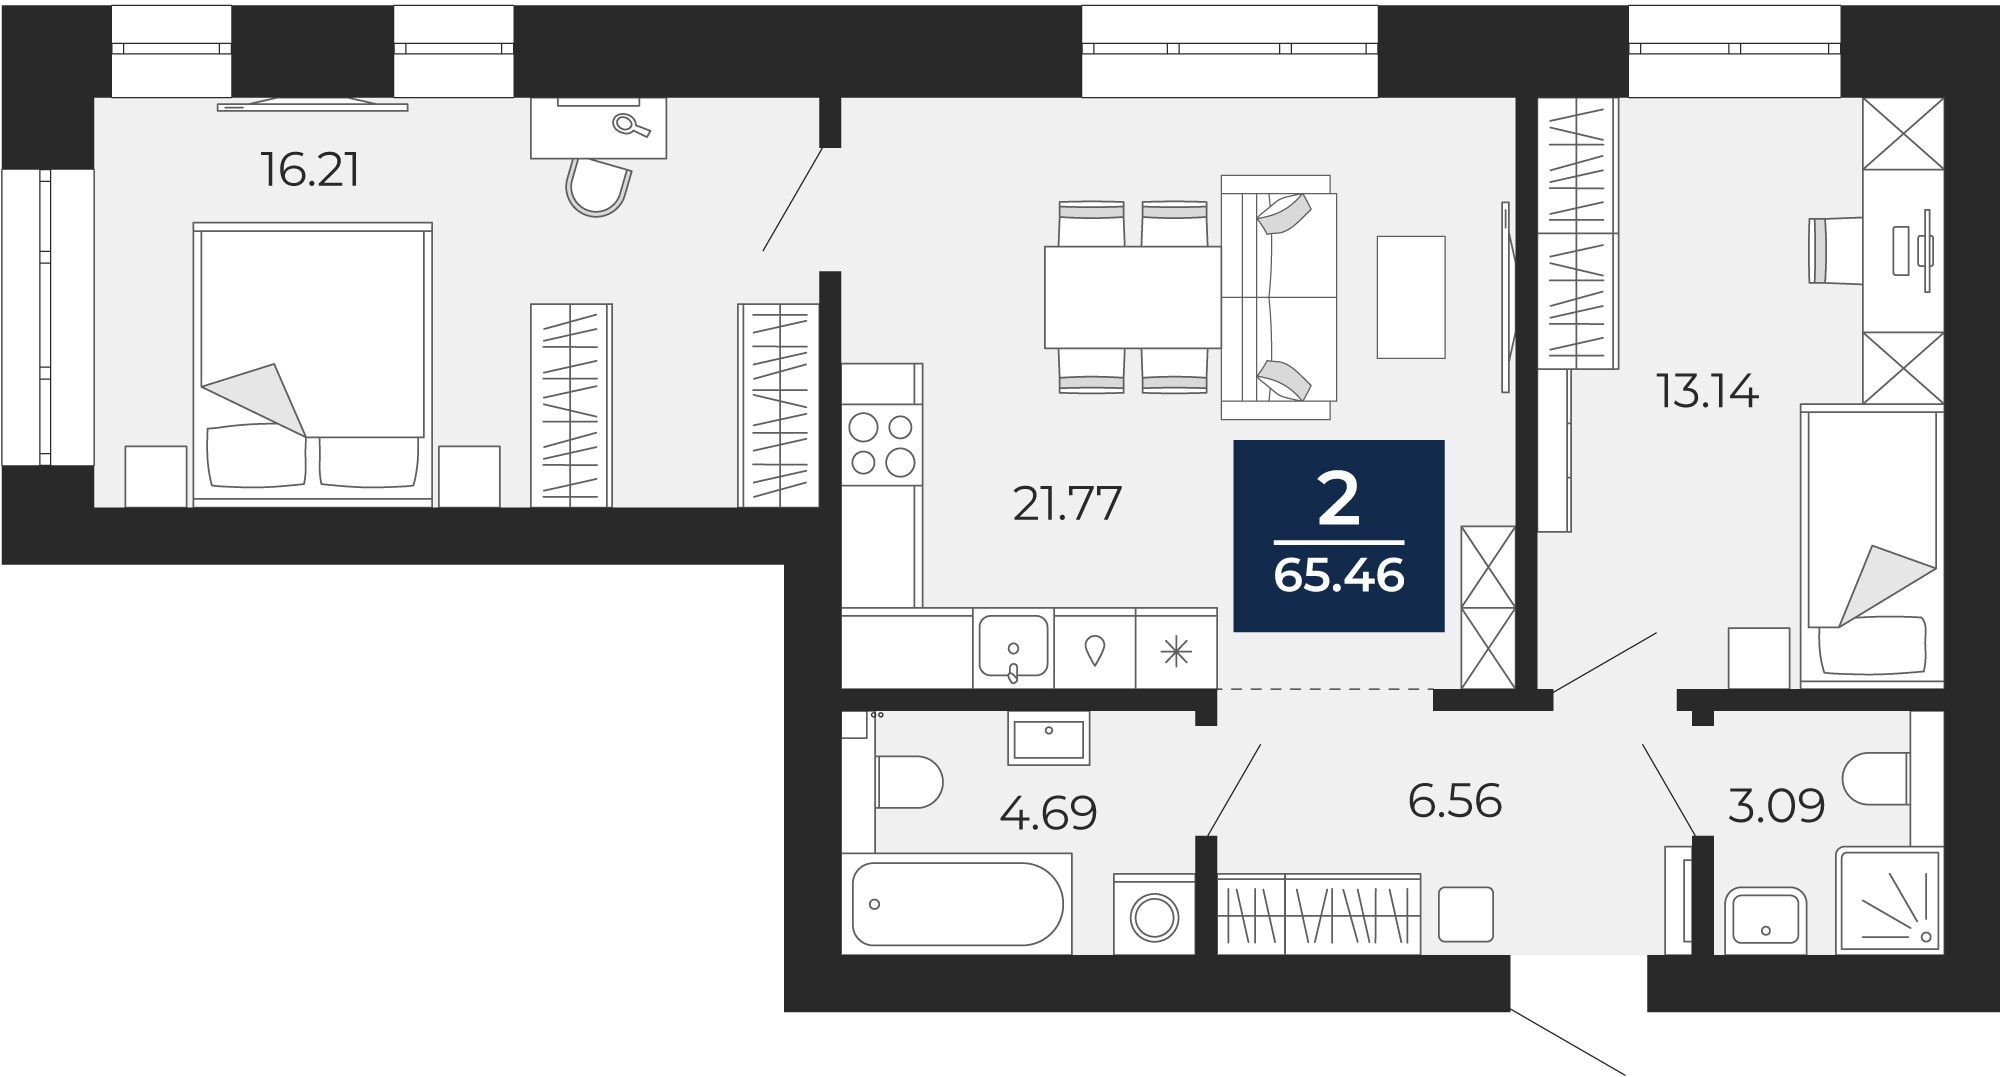 Квартира № 55, 2-комнатная, 65.46 кв. м, 2 этаж